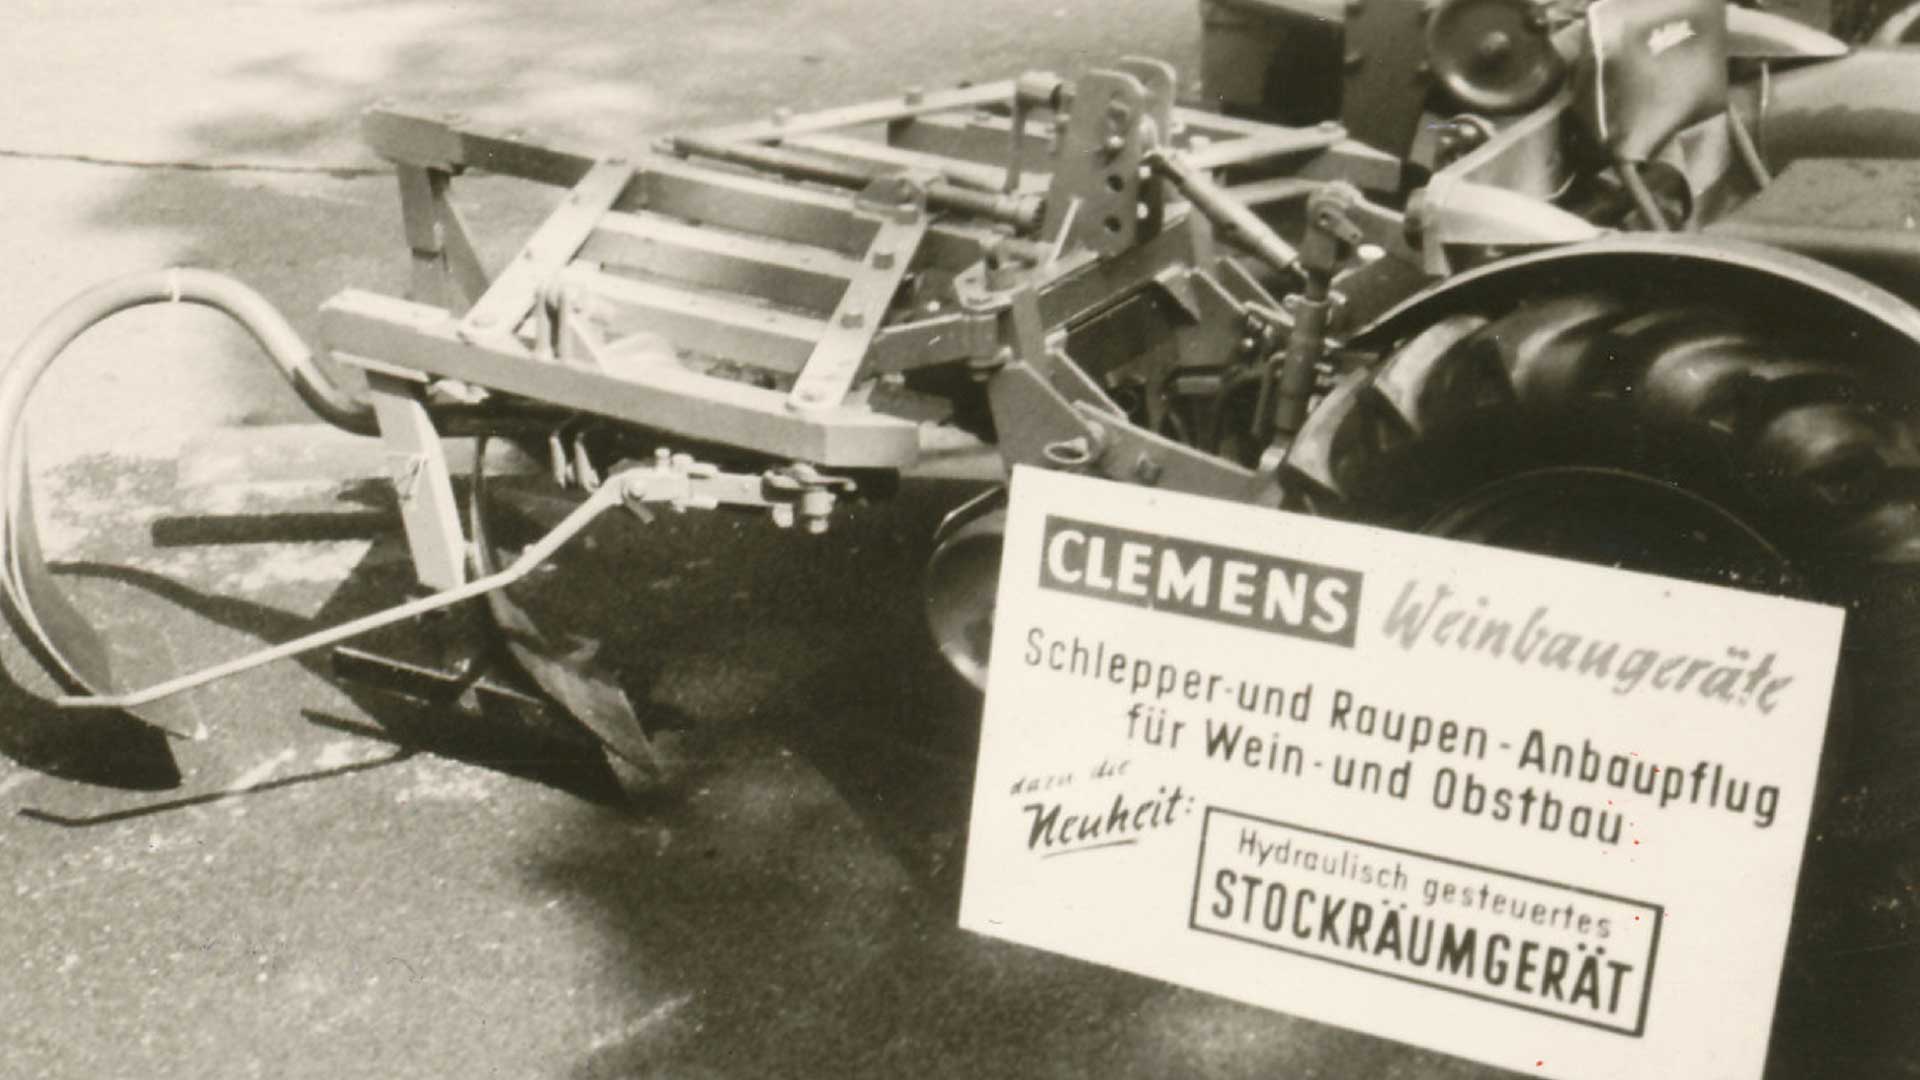 CLEMENS 1966 Anbaupflug mit einseitigem Stockräumgerät hydraulisch